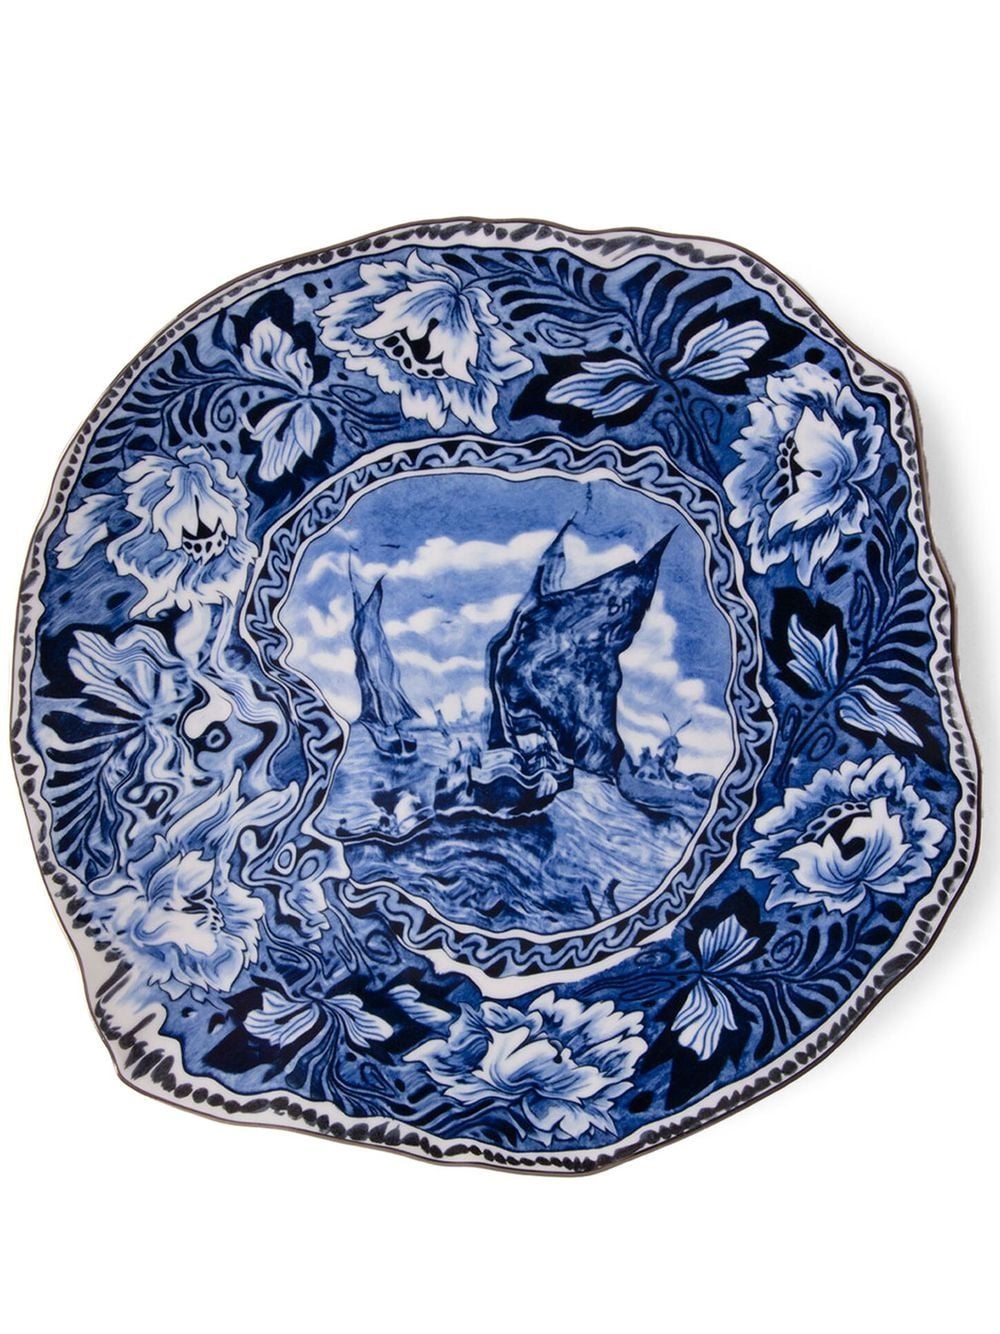 Seletti X Diesel Living Mastricht Ship Porcelain Plate In Blue